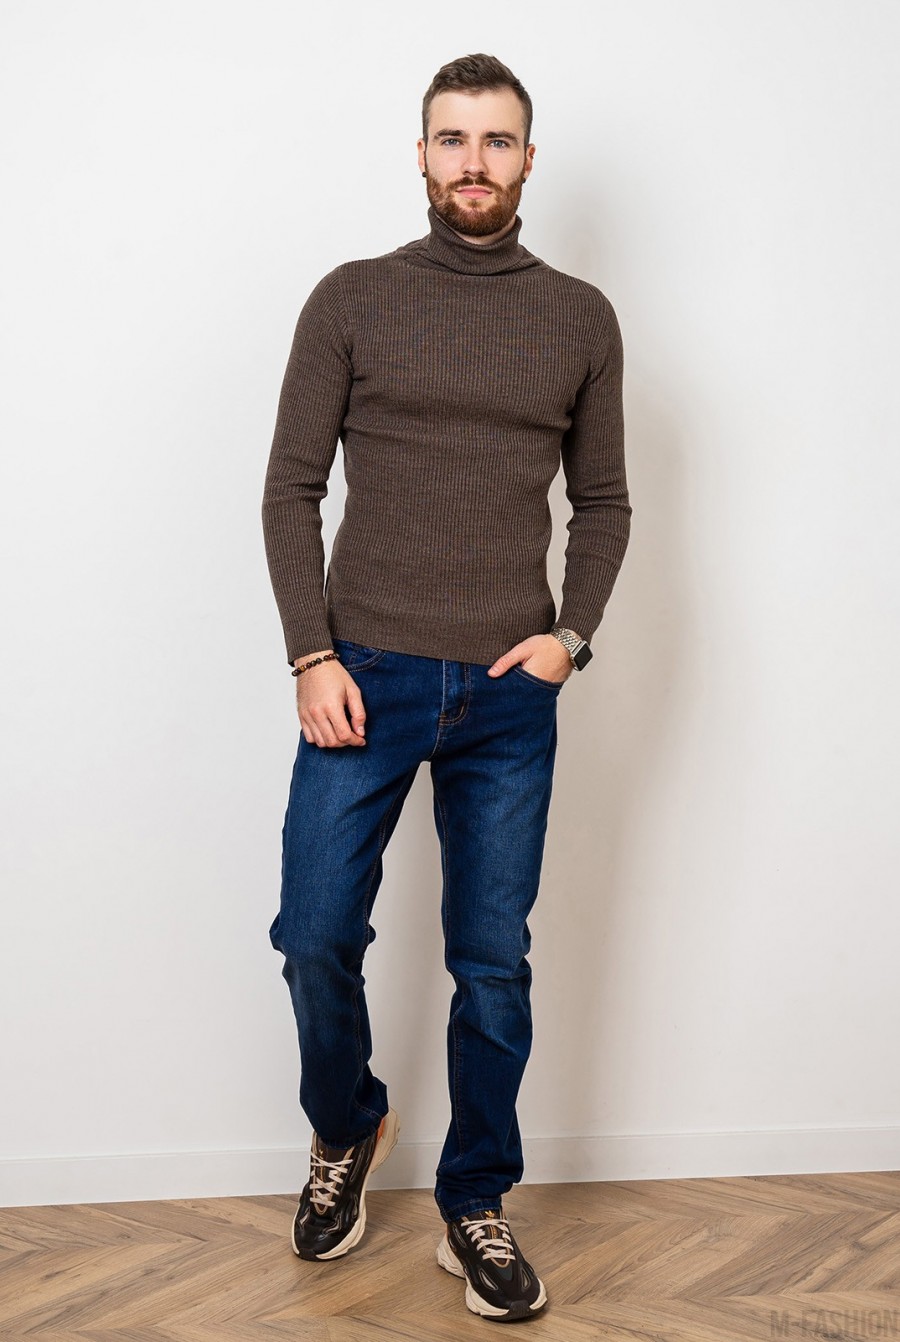 Коричневый шерстяной свитер с высоким горлом - Фото 1